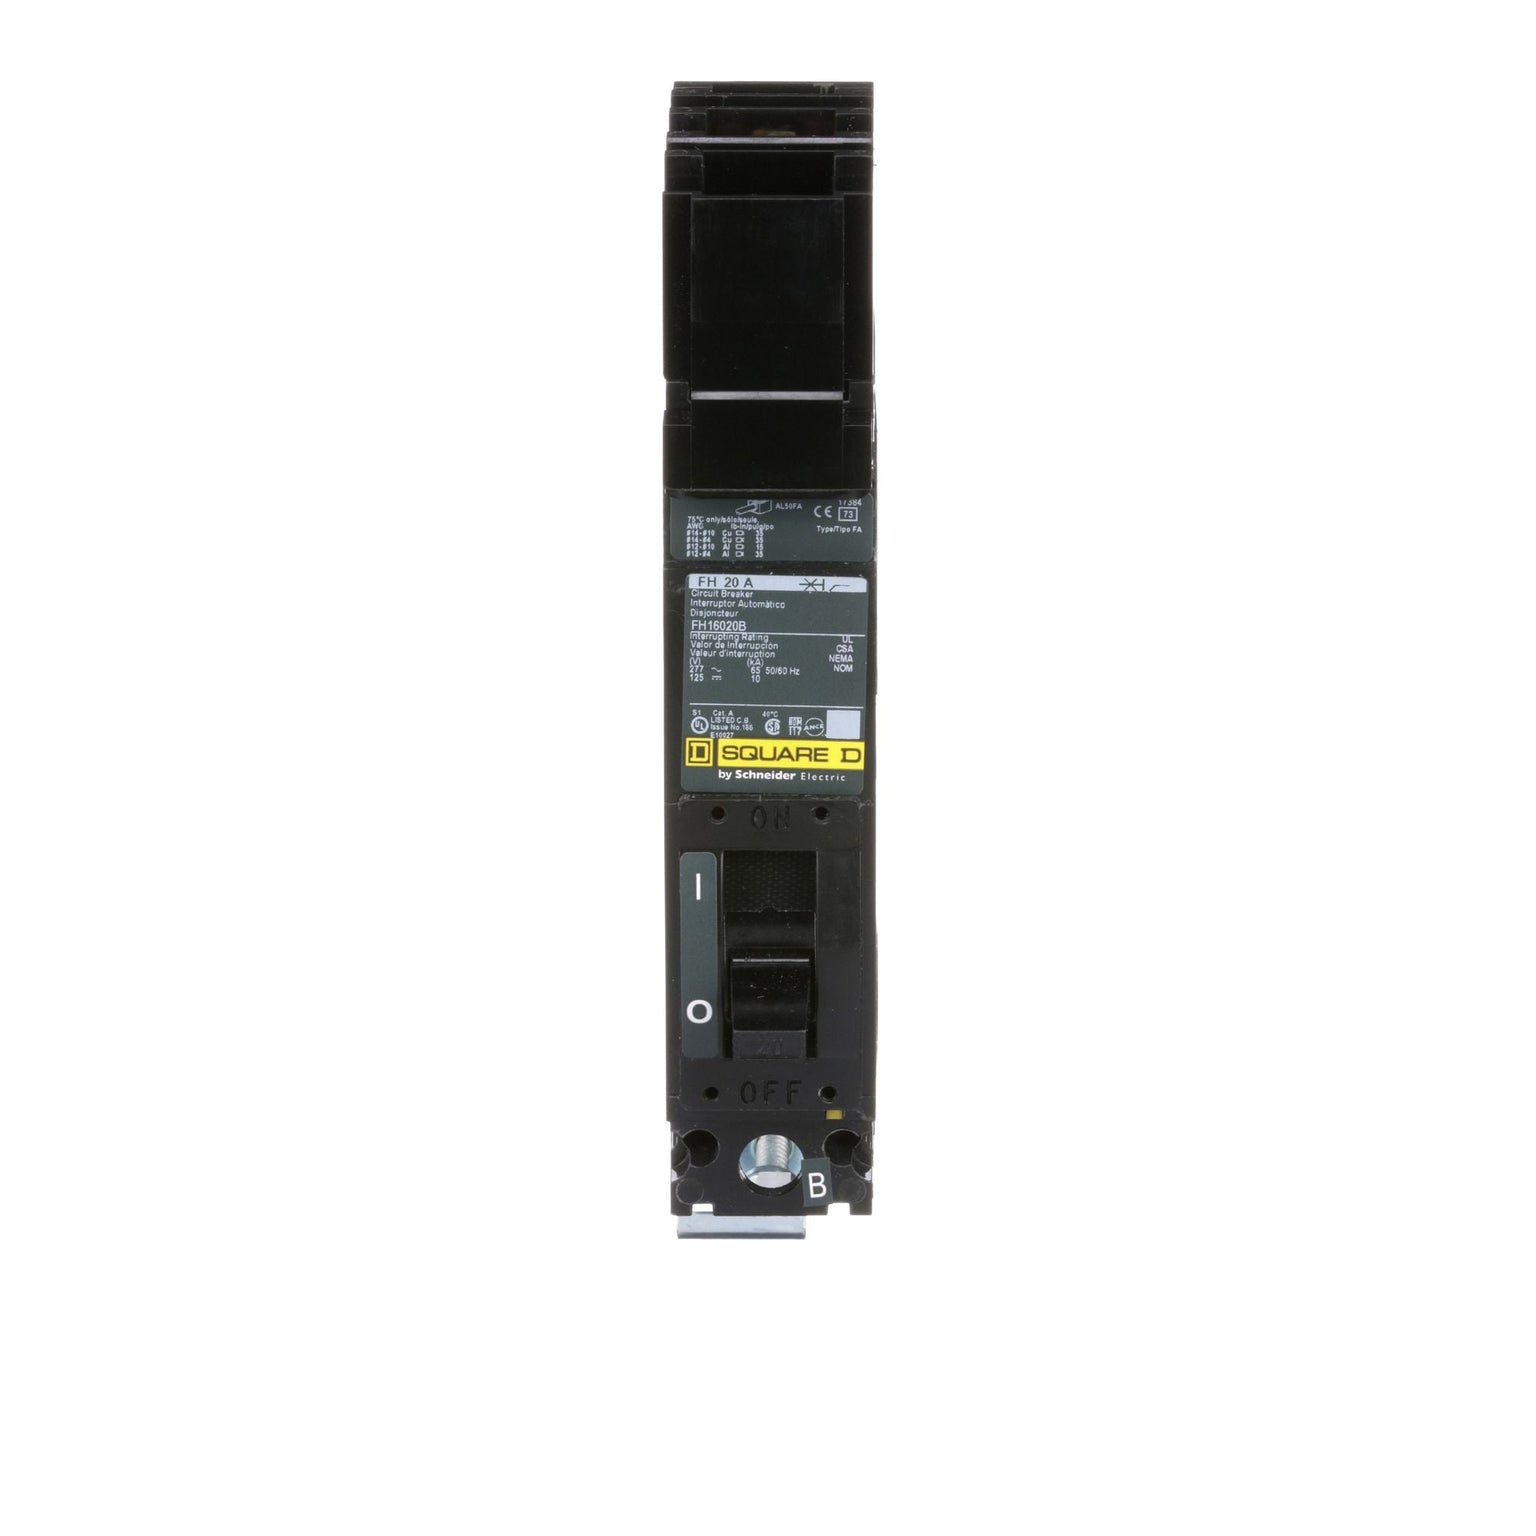 FH16020B - Square D 20 Amp 1 Pole 277 Volt Molded Case Circuit Breaker